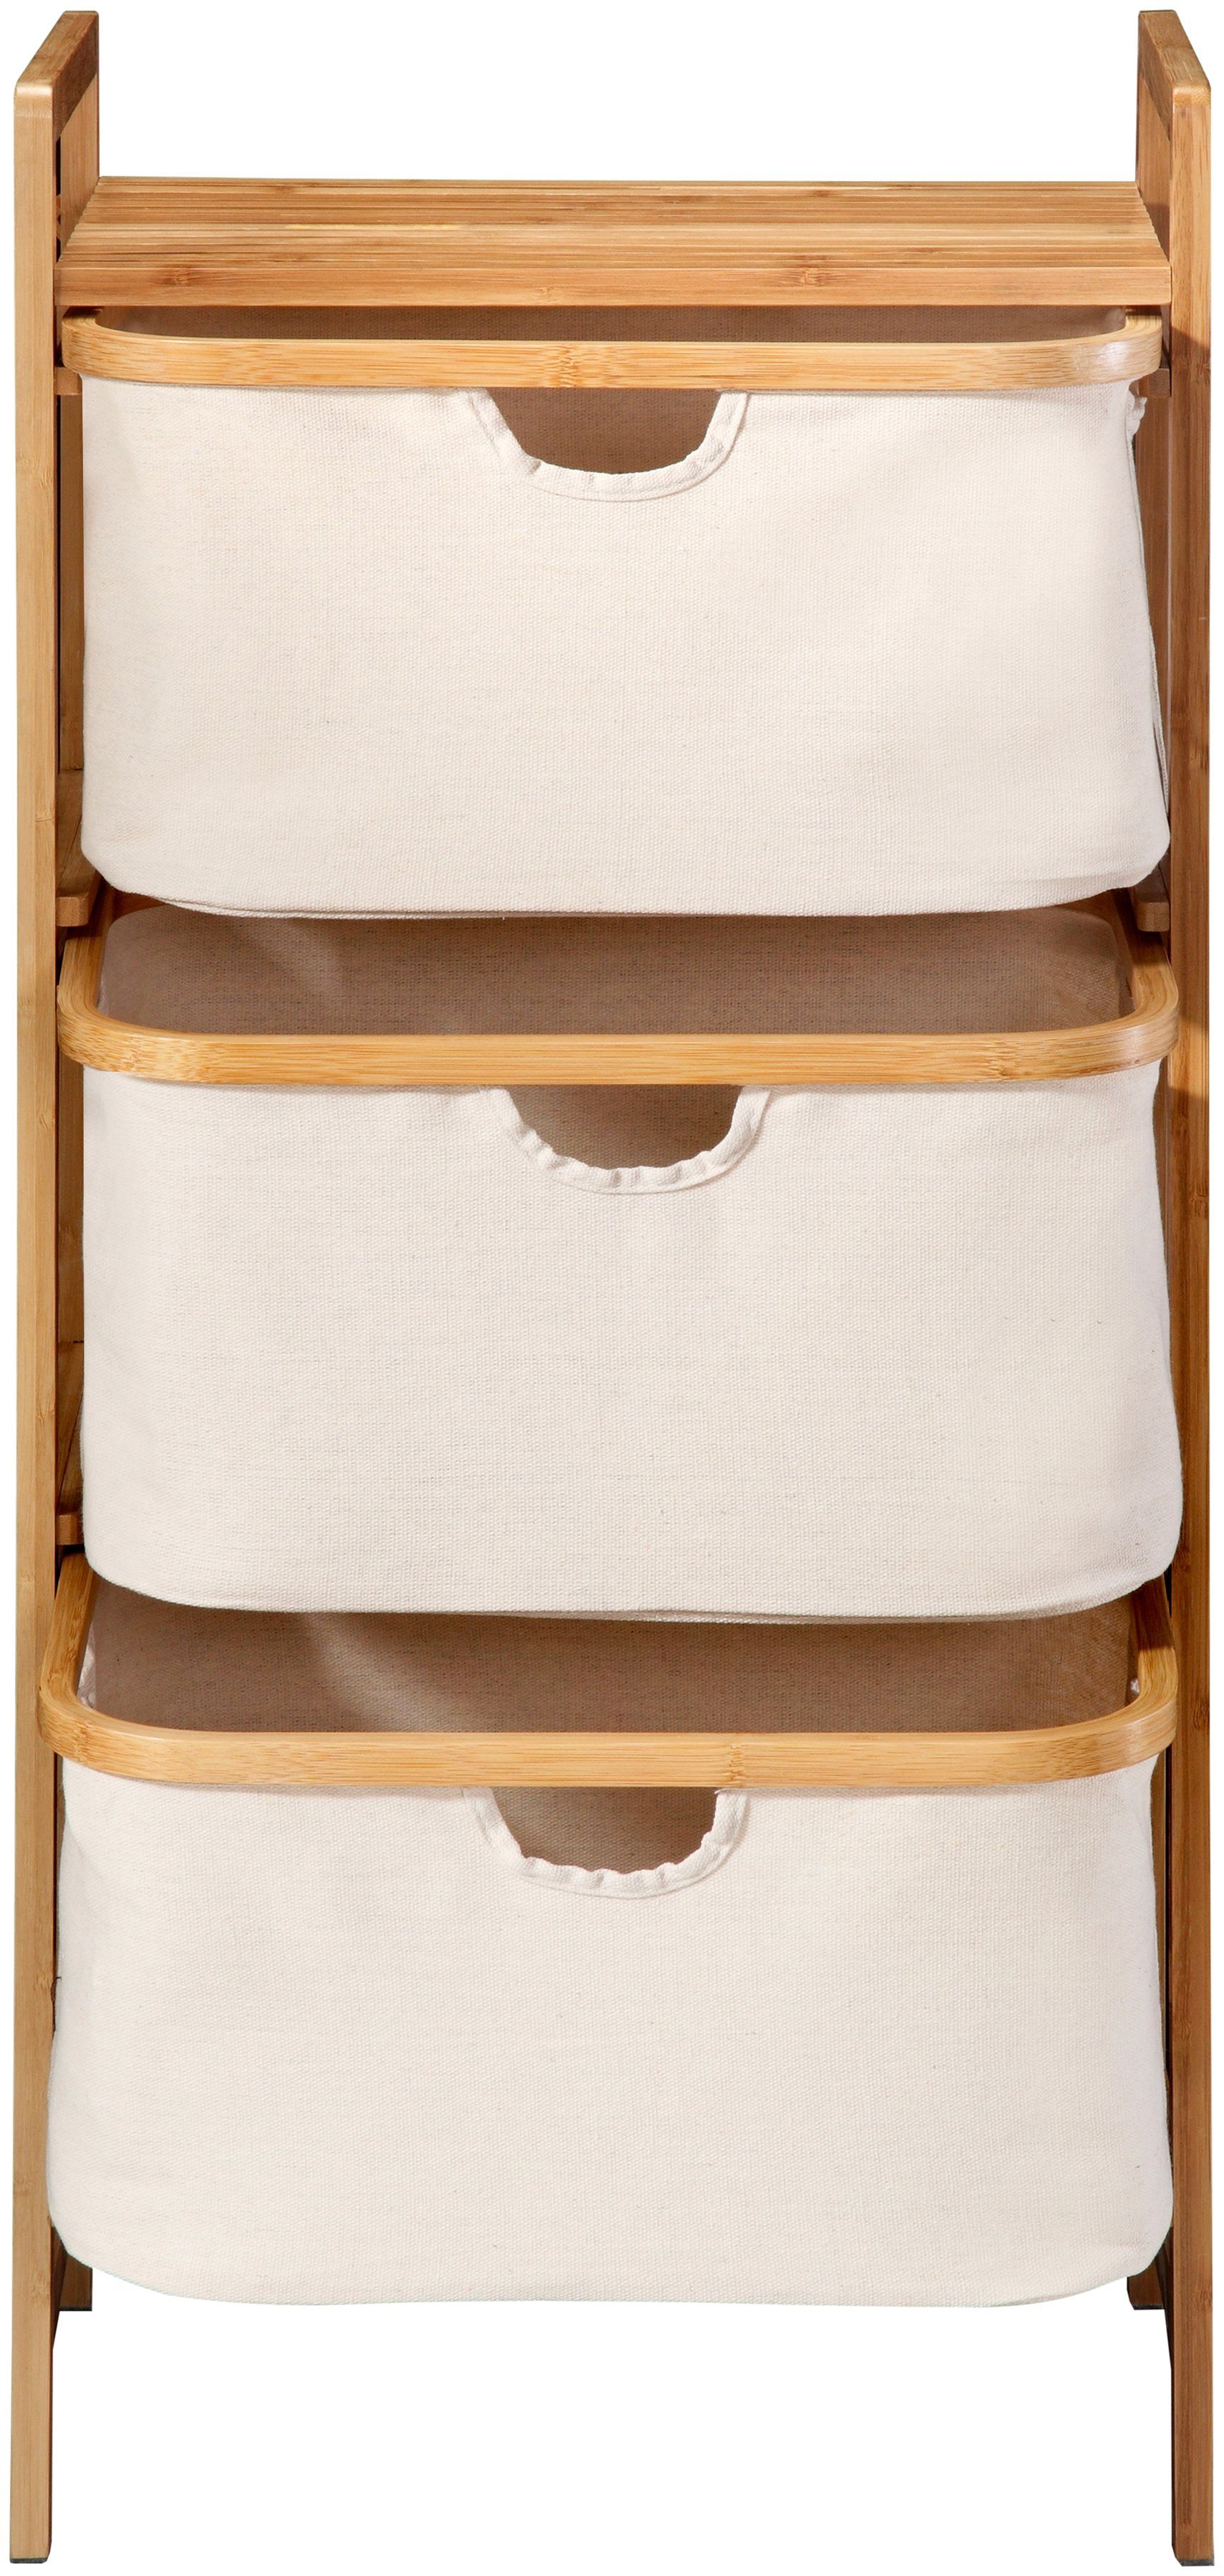 welltime badkamerrekje belize staand rek m. 3 mandjes van textiel, bamboe, ook als wasmand inzetbaar bruin